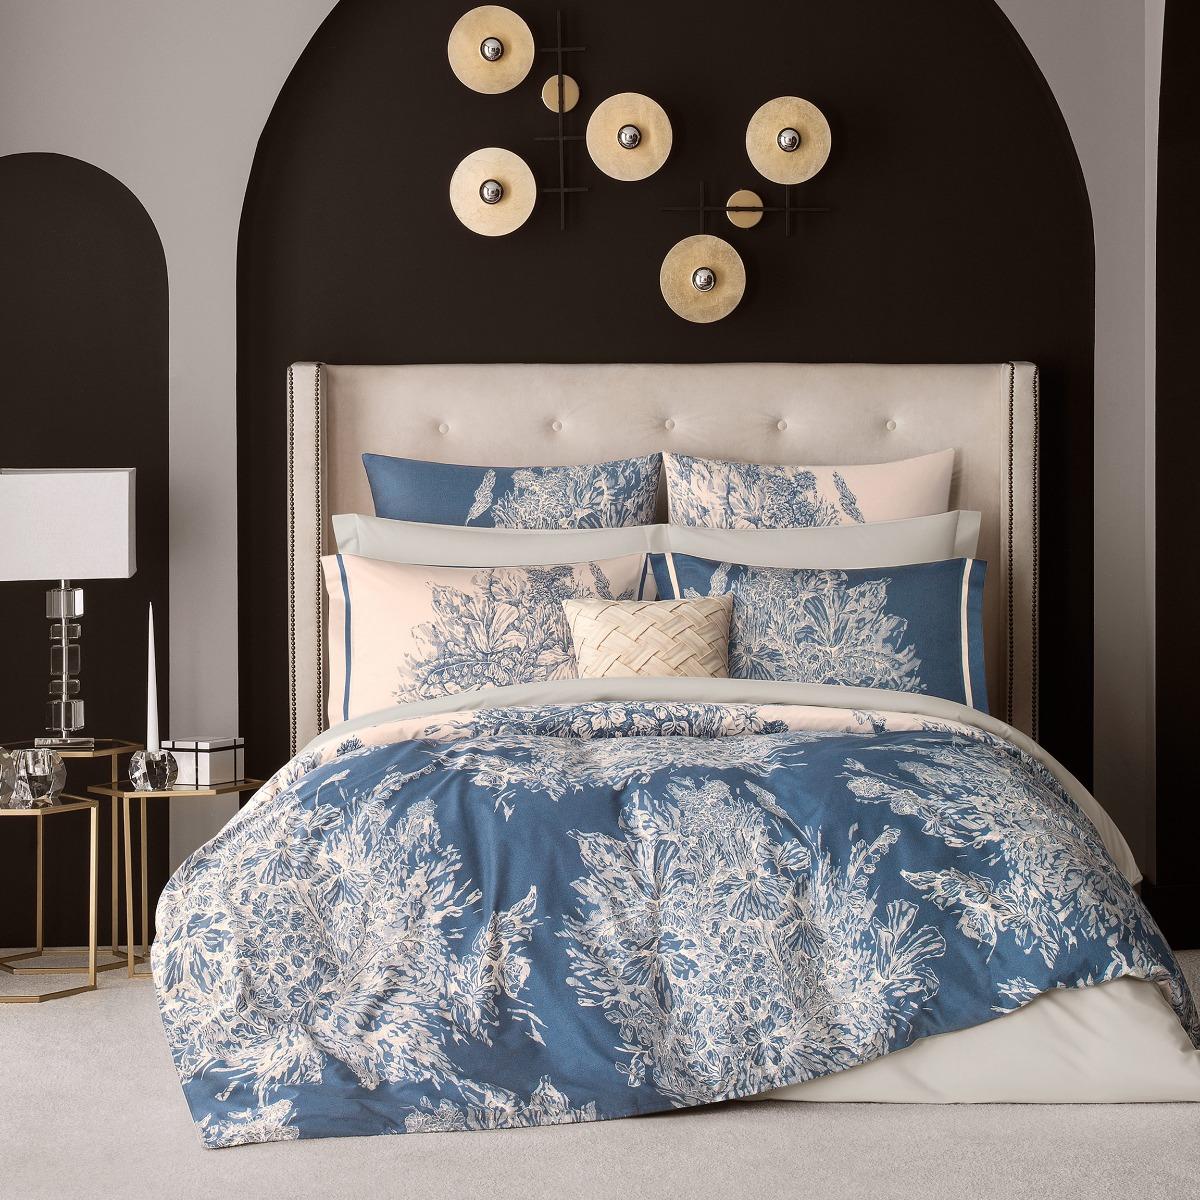 Комплект постельного белья Togas Фонтени бежевый с синим Семейный/дуэт комплект садовой мебели lf бежевый с синим из 4 предметов